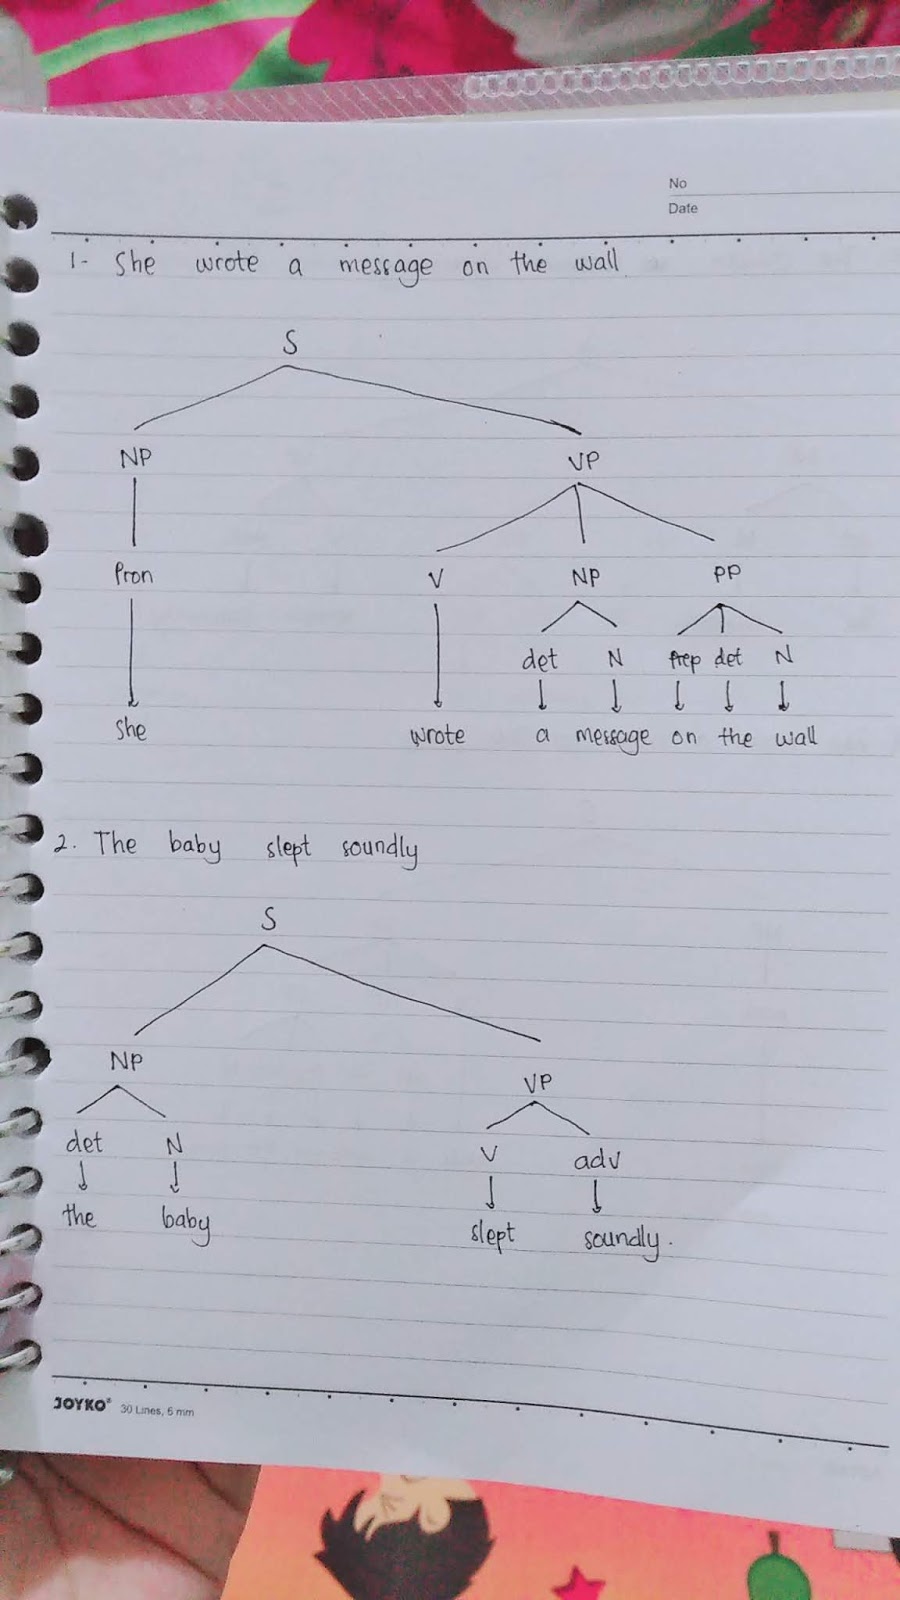 f-e-f-e-adverbial-phrase-adjective-phrase-and-prepositional-phrase-tree-diagram